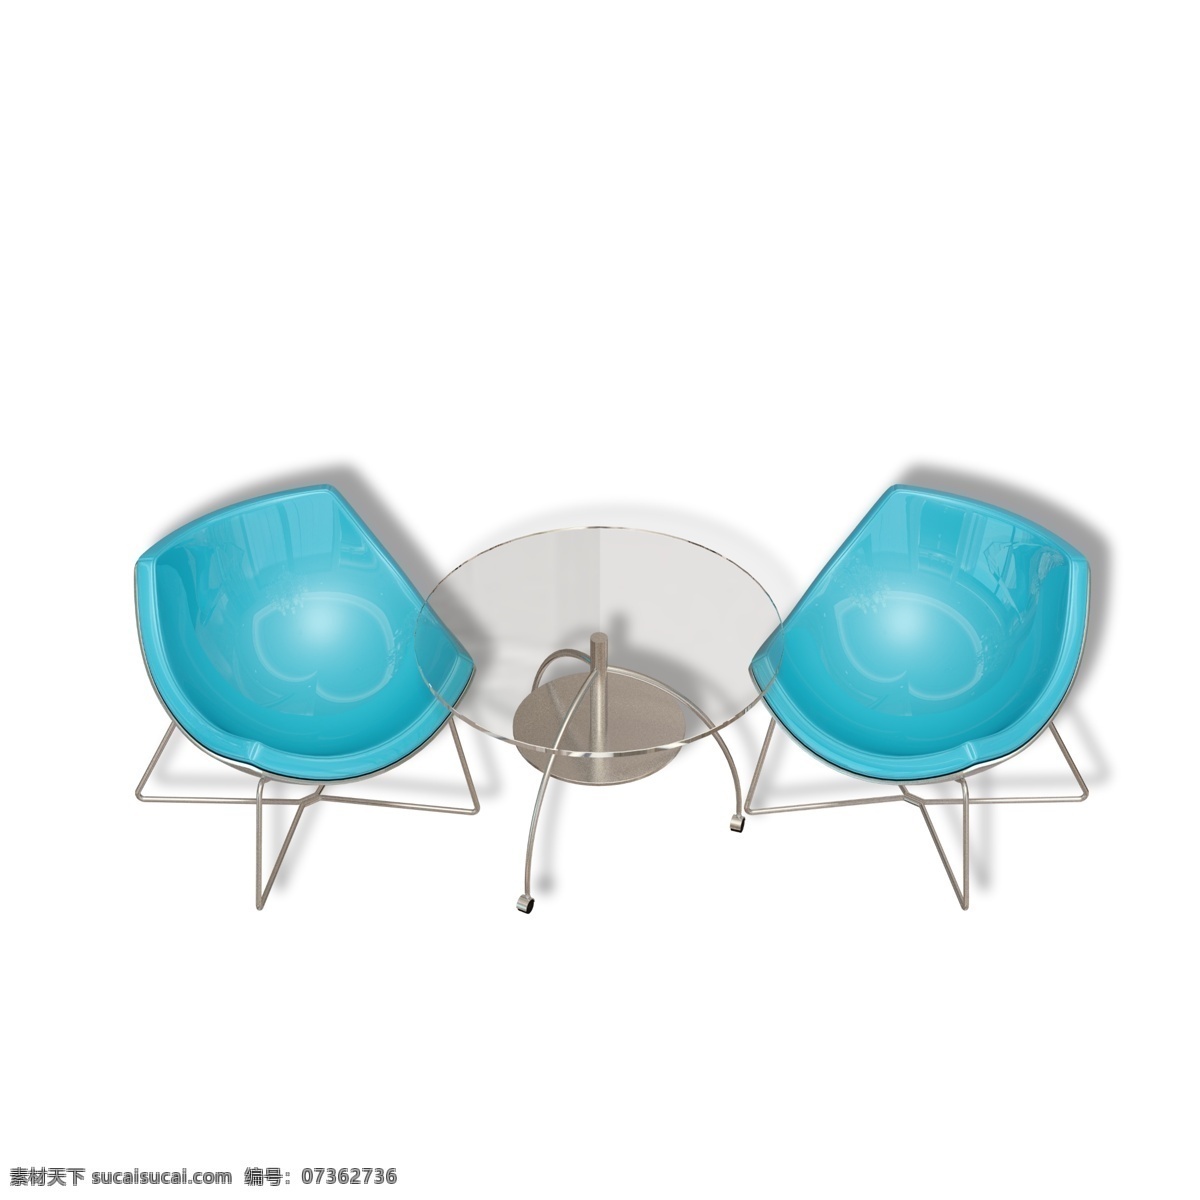 休闲 塑料 玻璃 桌椅 家具 桌子 椅子 茶几 玻璃桌 塑料椅子